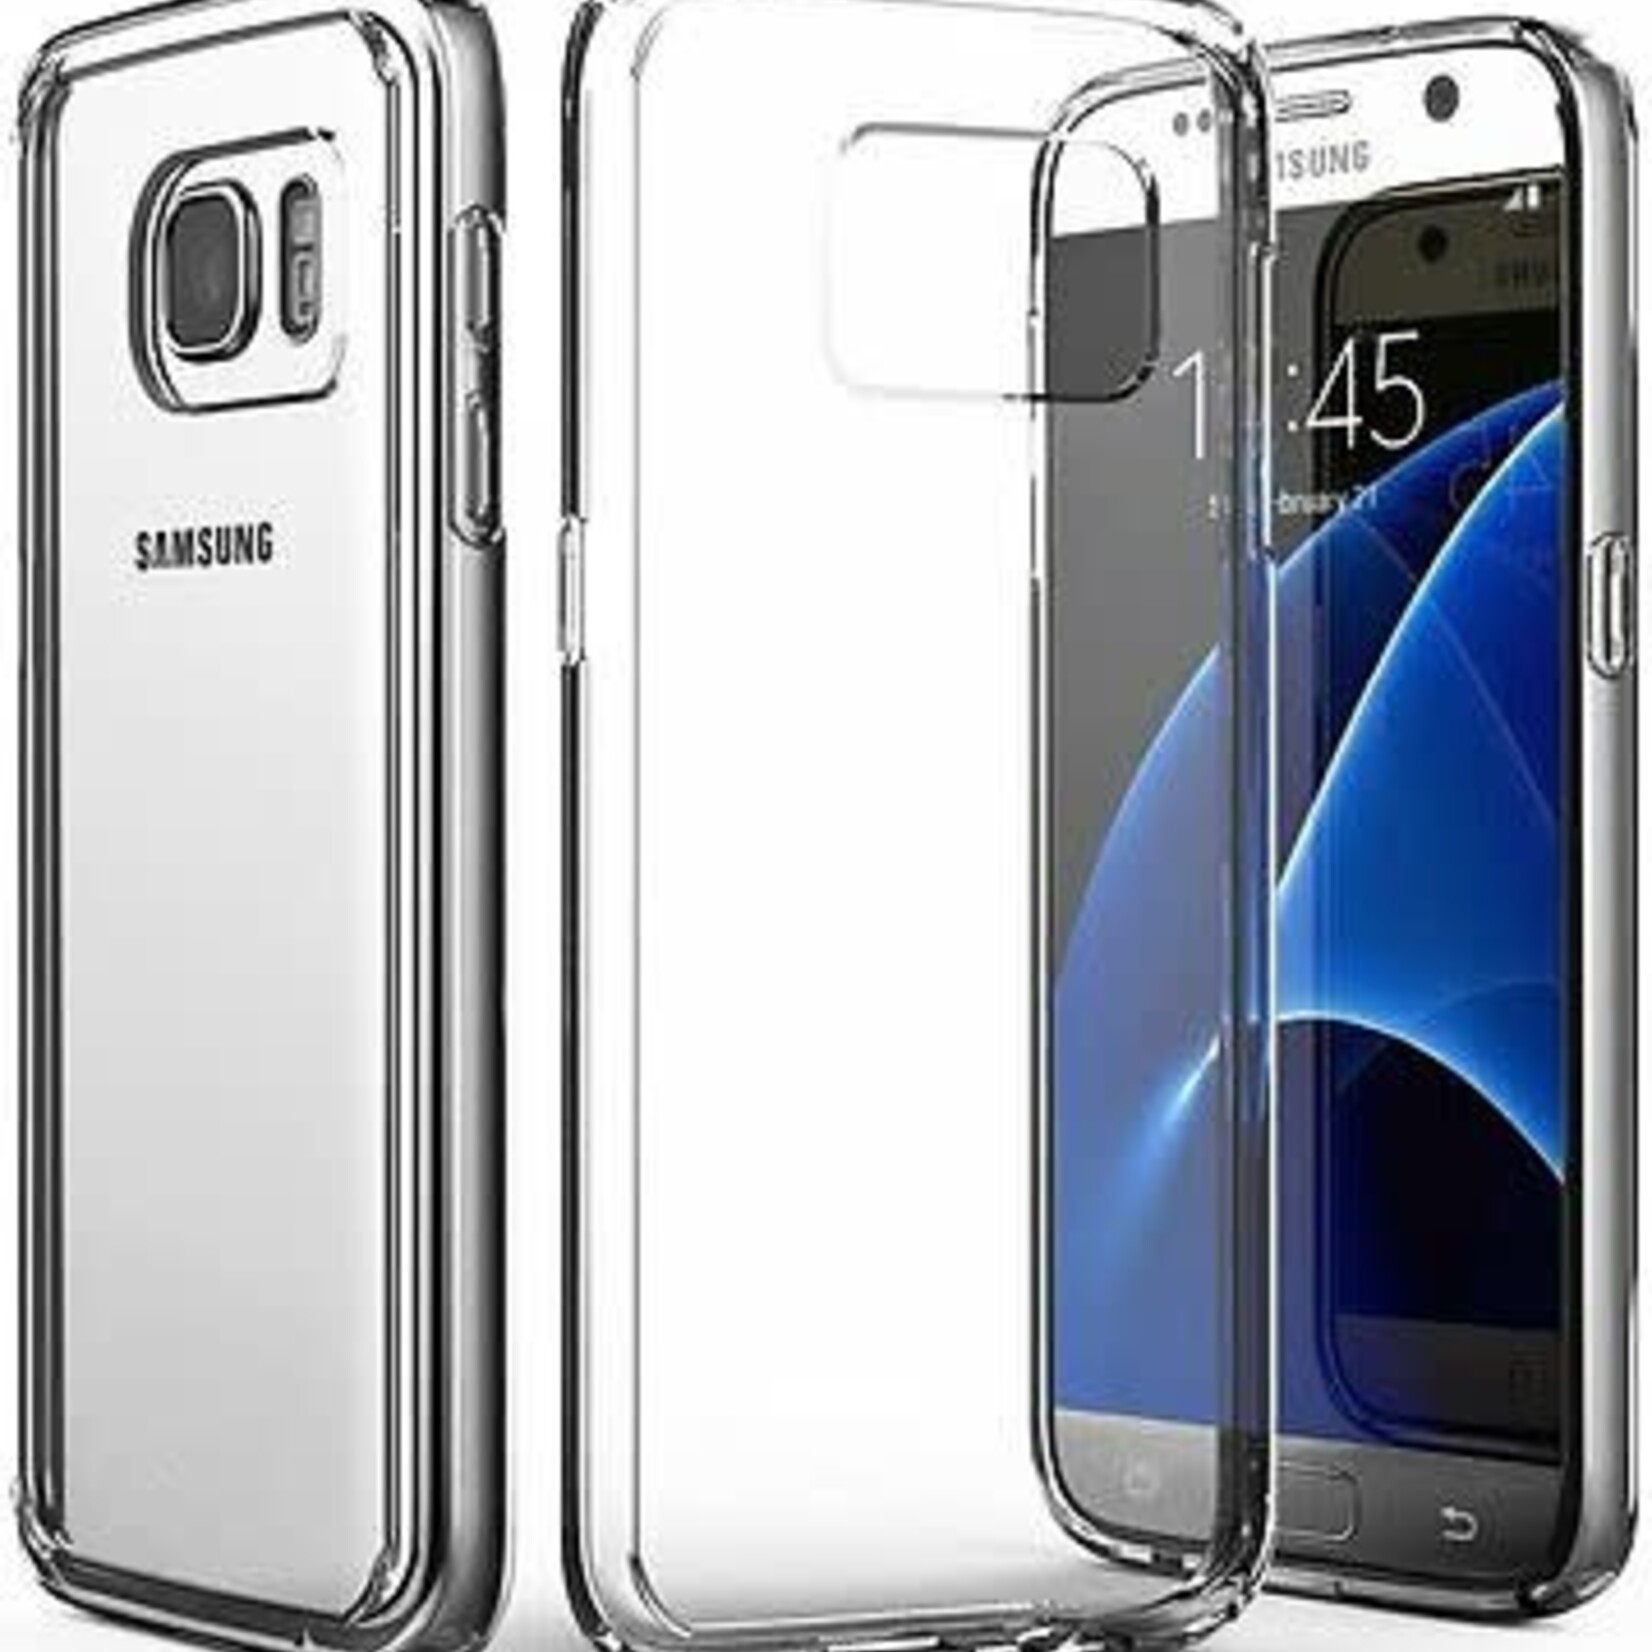 Samsung ÉTUI SAMSUNG S7 Tpu clear silver